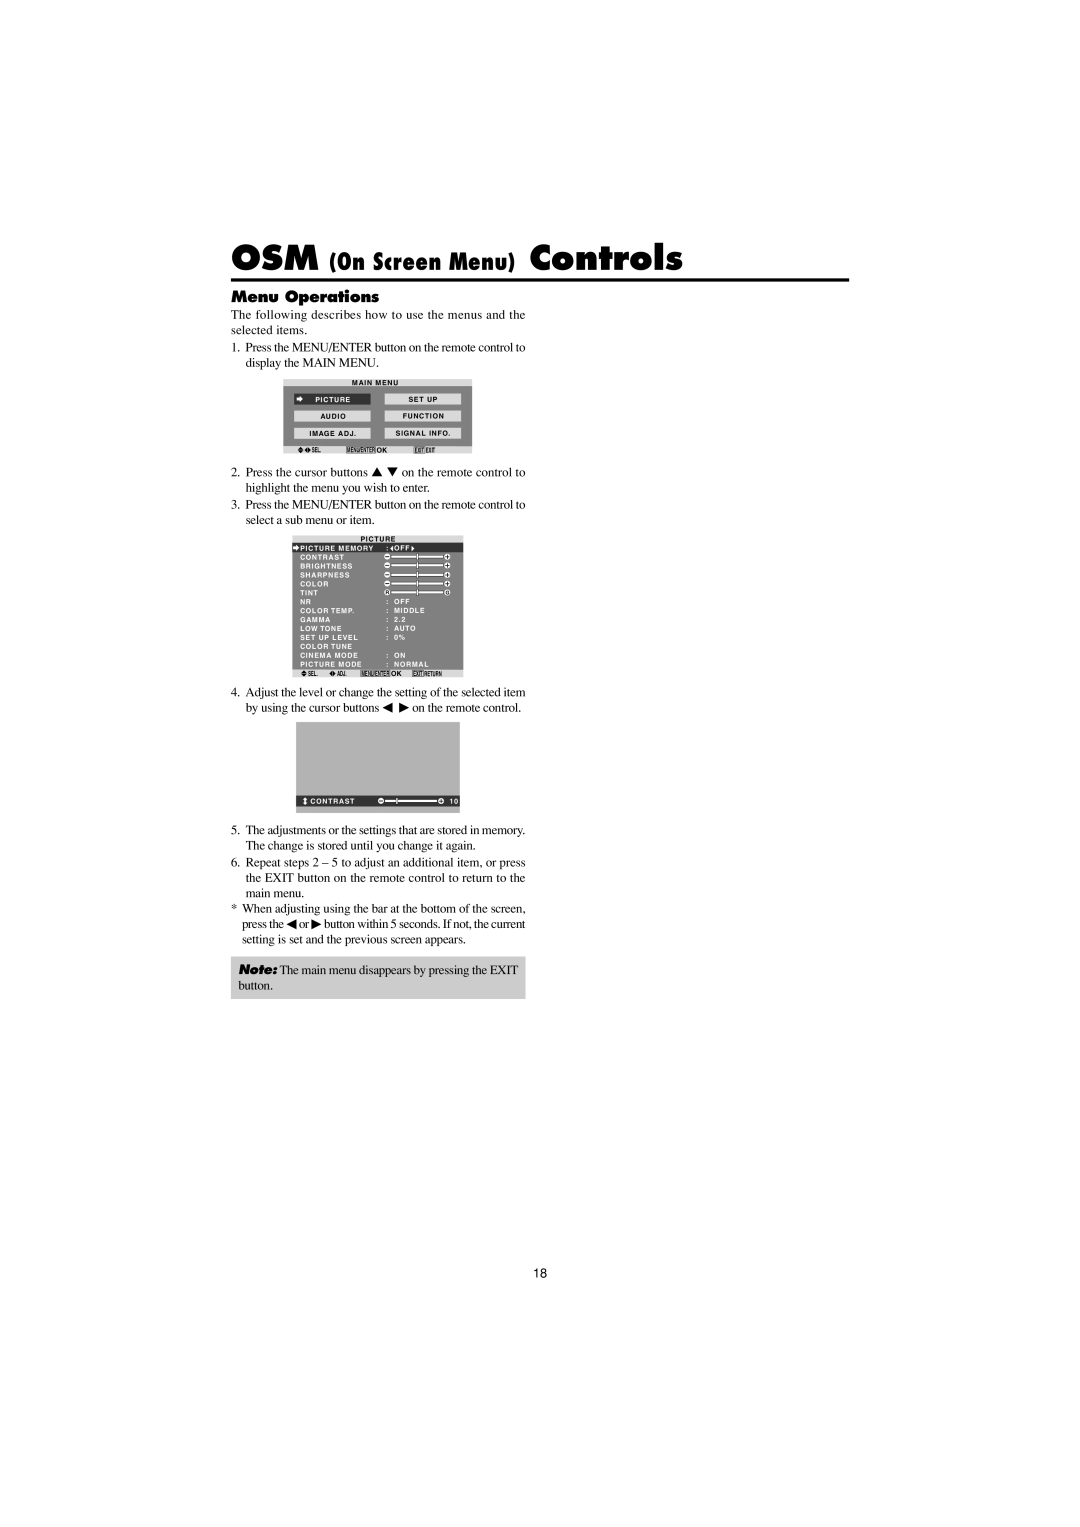 Marantz PD6150D manual Menu Operations, OSM On Screen Menu Controls 